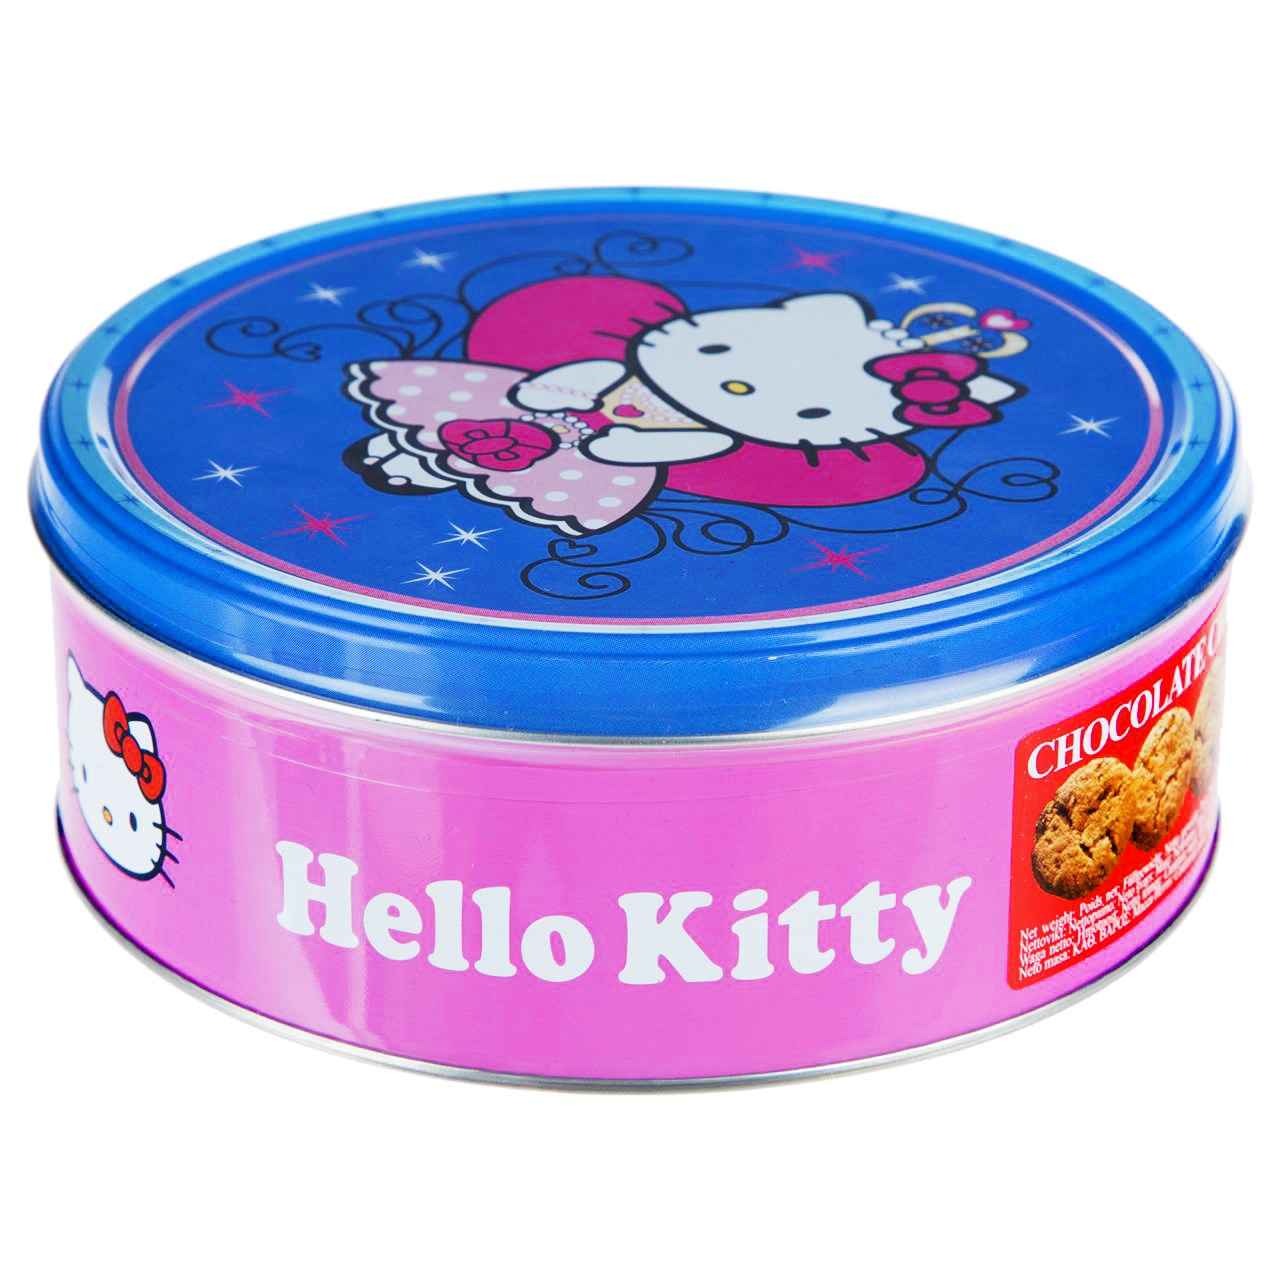 بیسکوییت با تکه های شکلات جکوبسنز مدل Hello Kitty مقدار 150 گرم